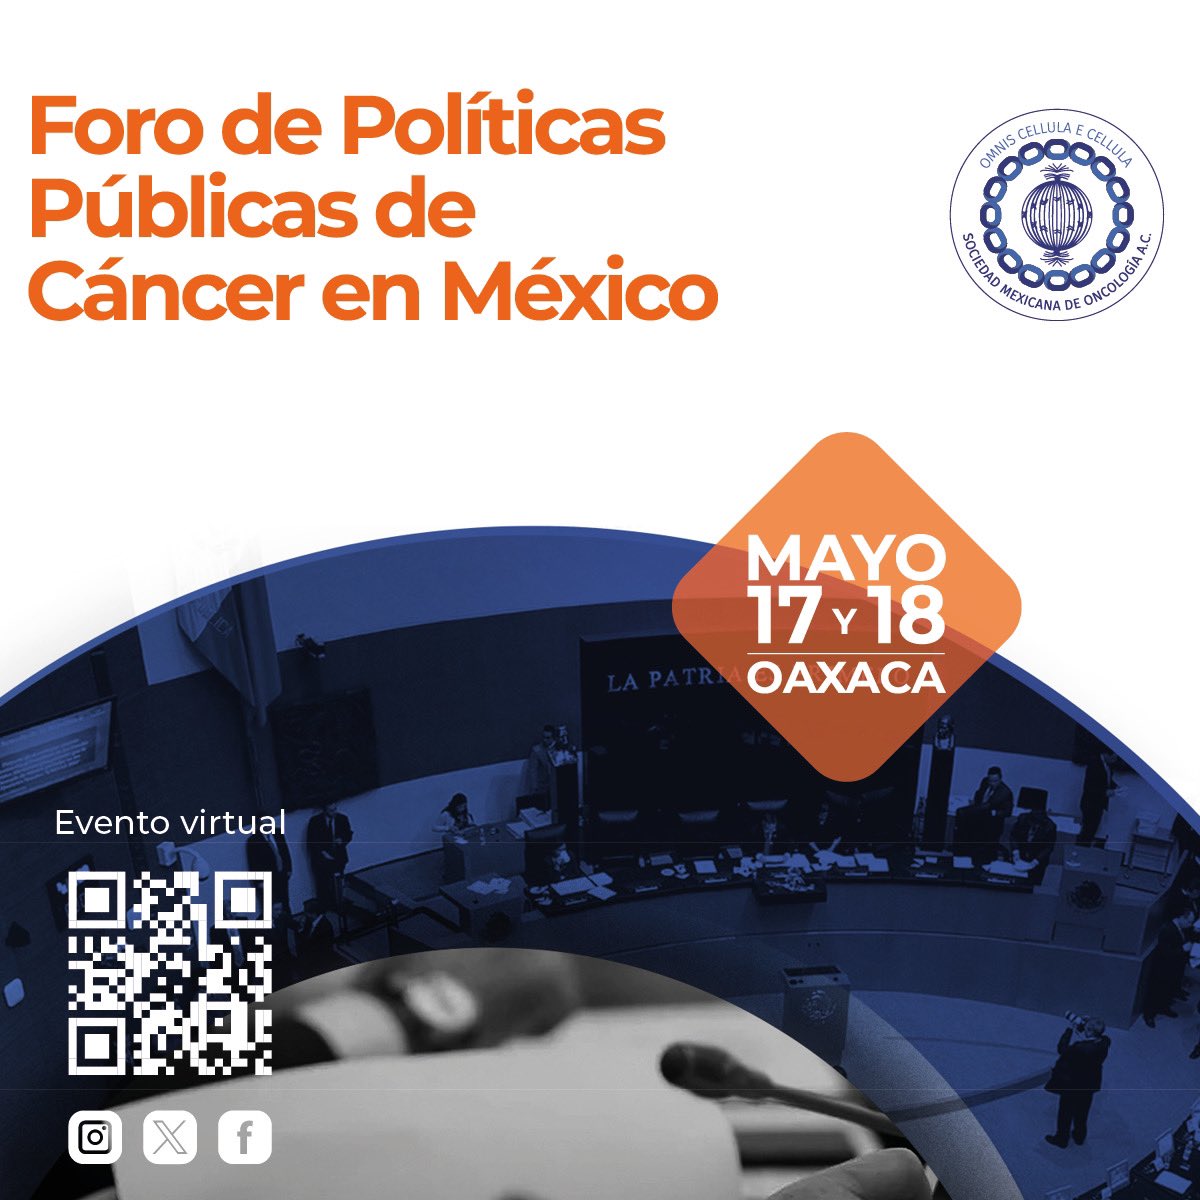 ¡Recordatorio importante! El Foro de Políticas Públicas de Cáncer en México se llevará a cabo los días 17 y 18 de mayo de 2024 No olvides registrarte para seguir la transmisión en línea: shorturl.at/fkAJS #todosomosmeo #Oncology #ForoCáncerMéxico #SaludPública #Cancer